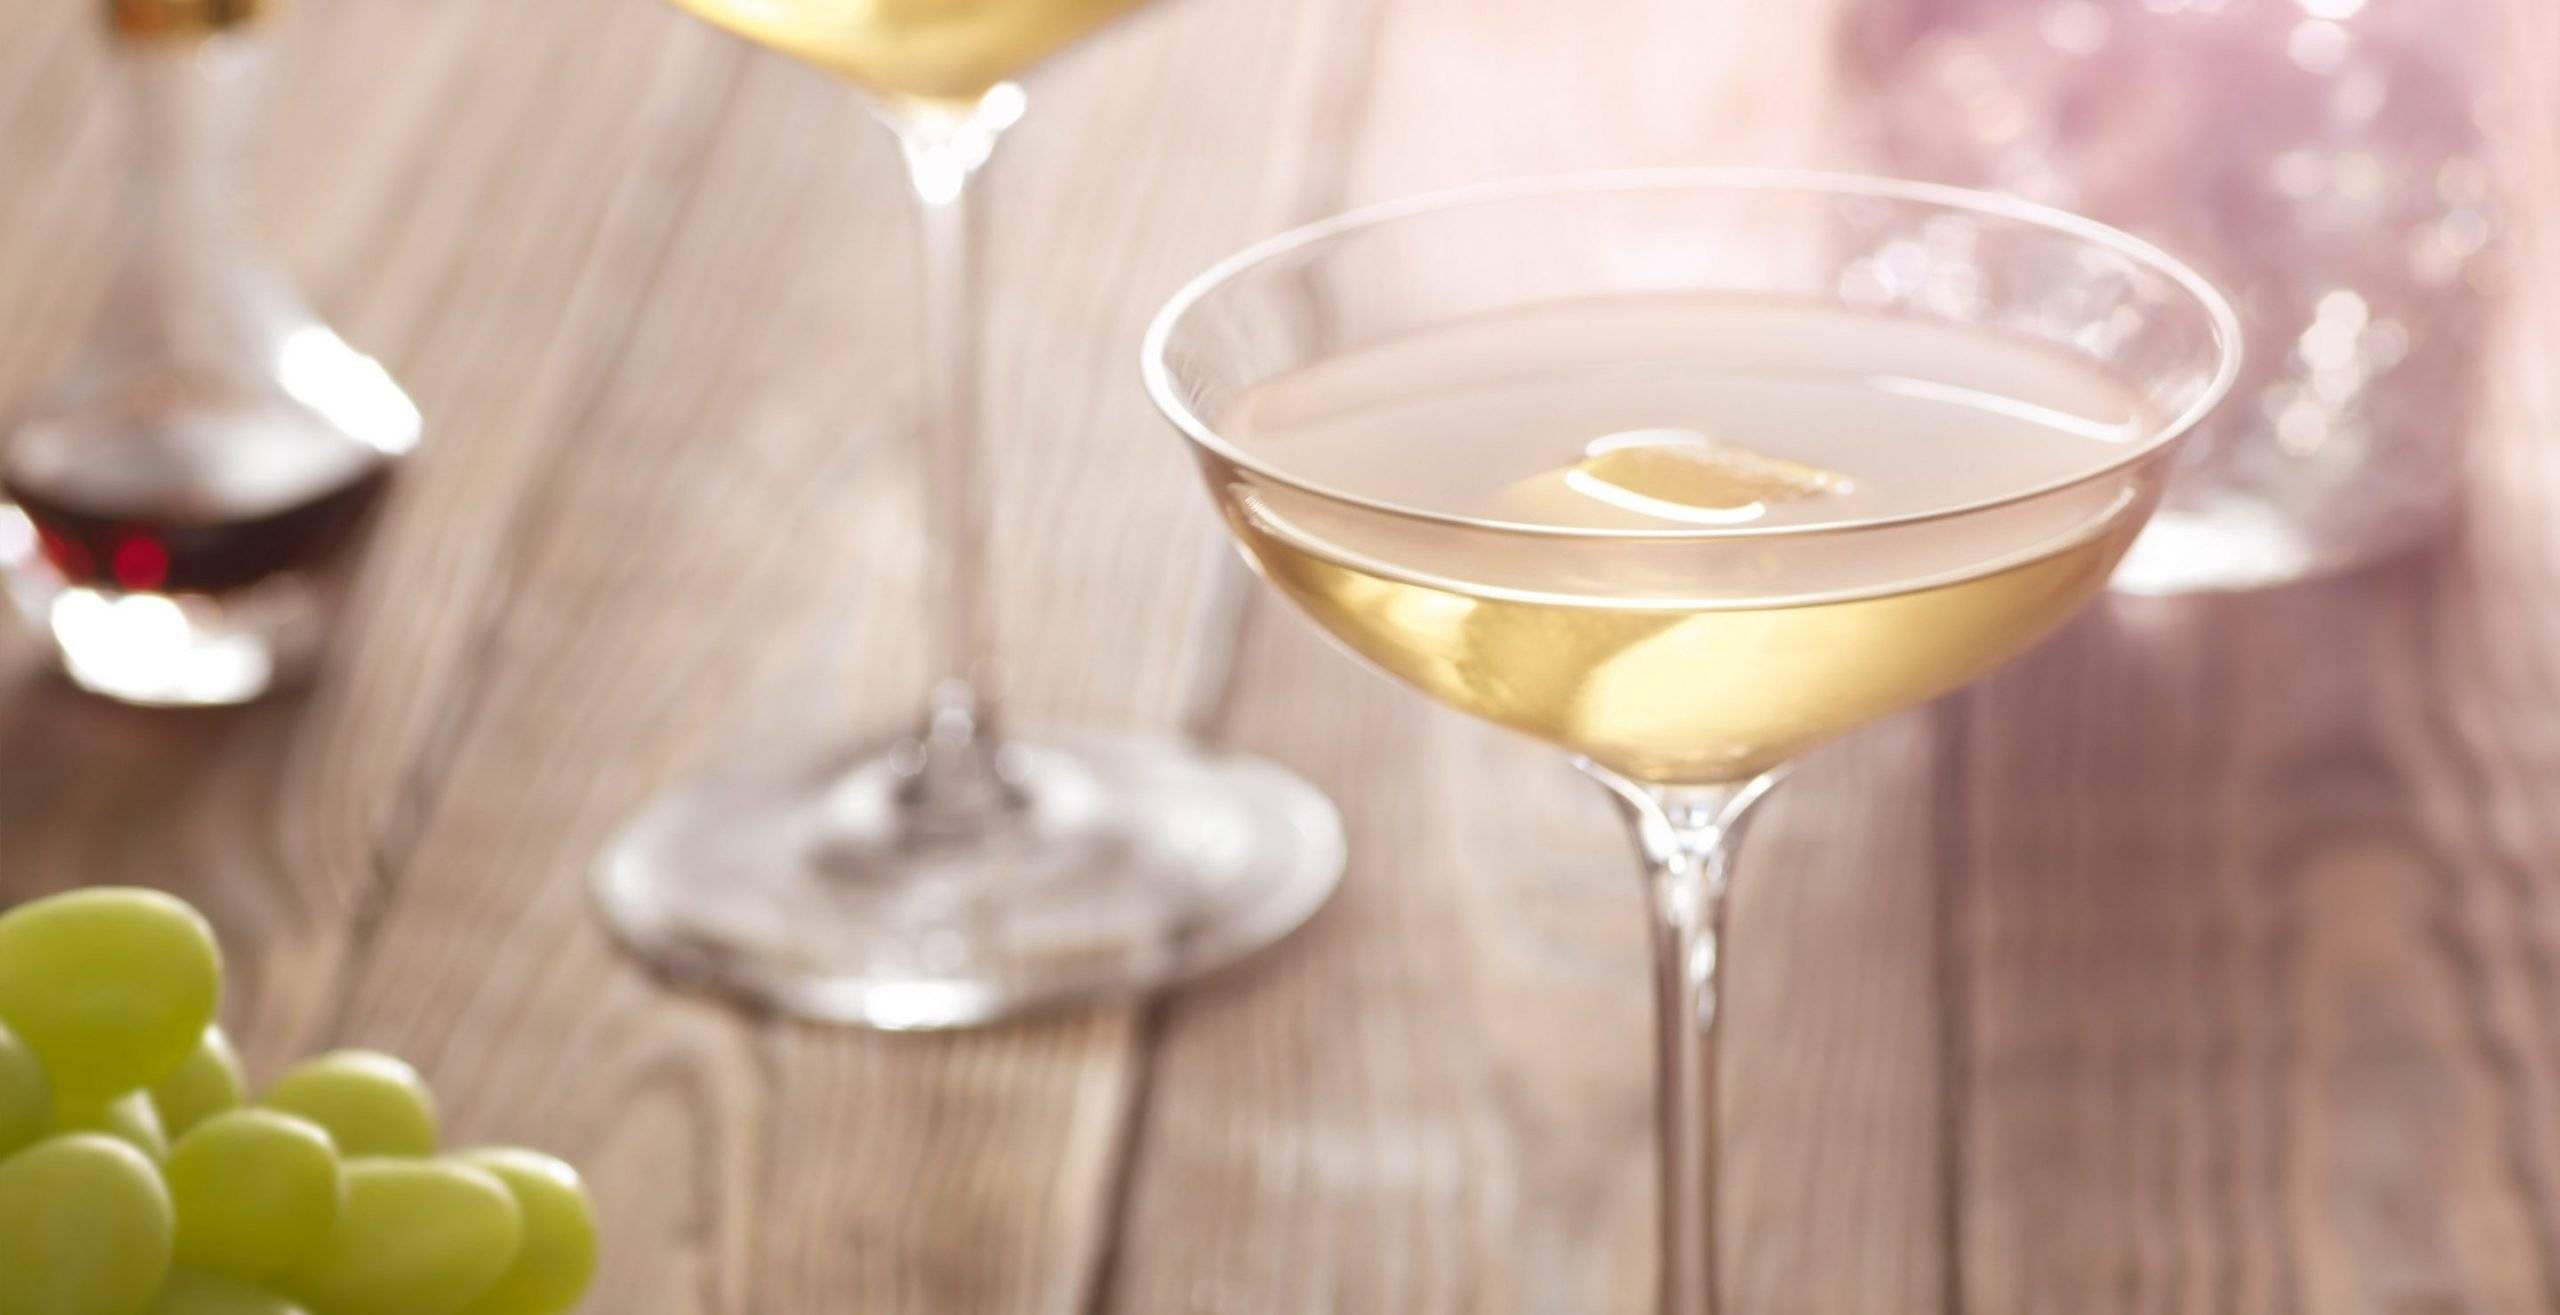 Martini-FeaturedCarousel-2960x1520-Drinks-GinMartini@2x-2880x1479